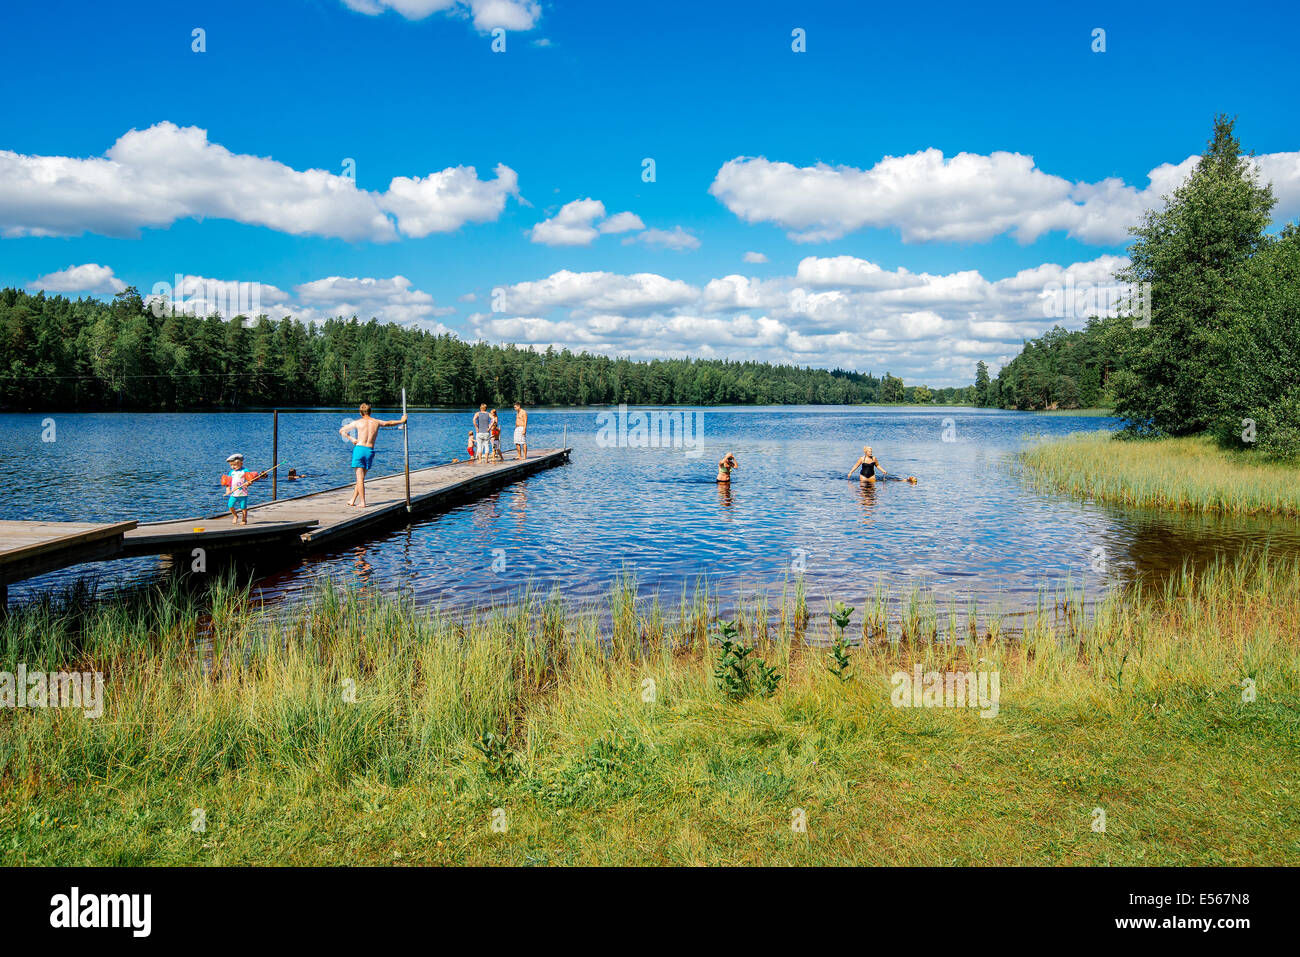 Verano en Suecia - gente disfrutando de un día soleado en un lago Foto de stock